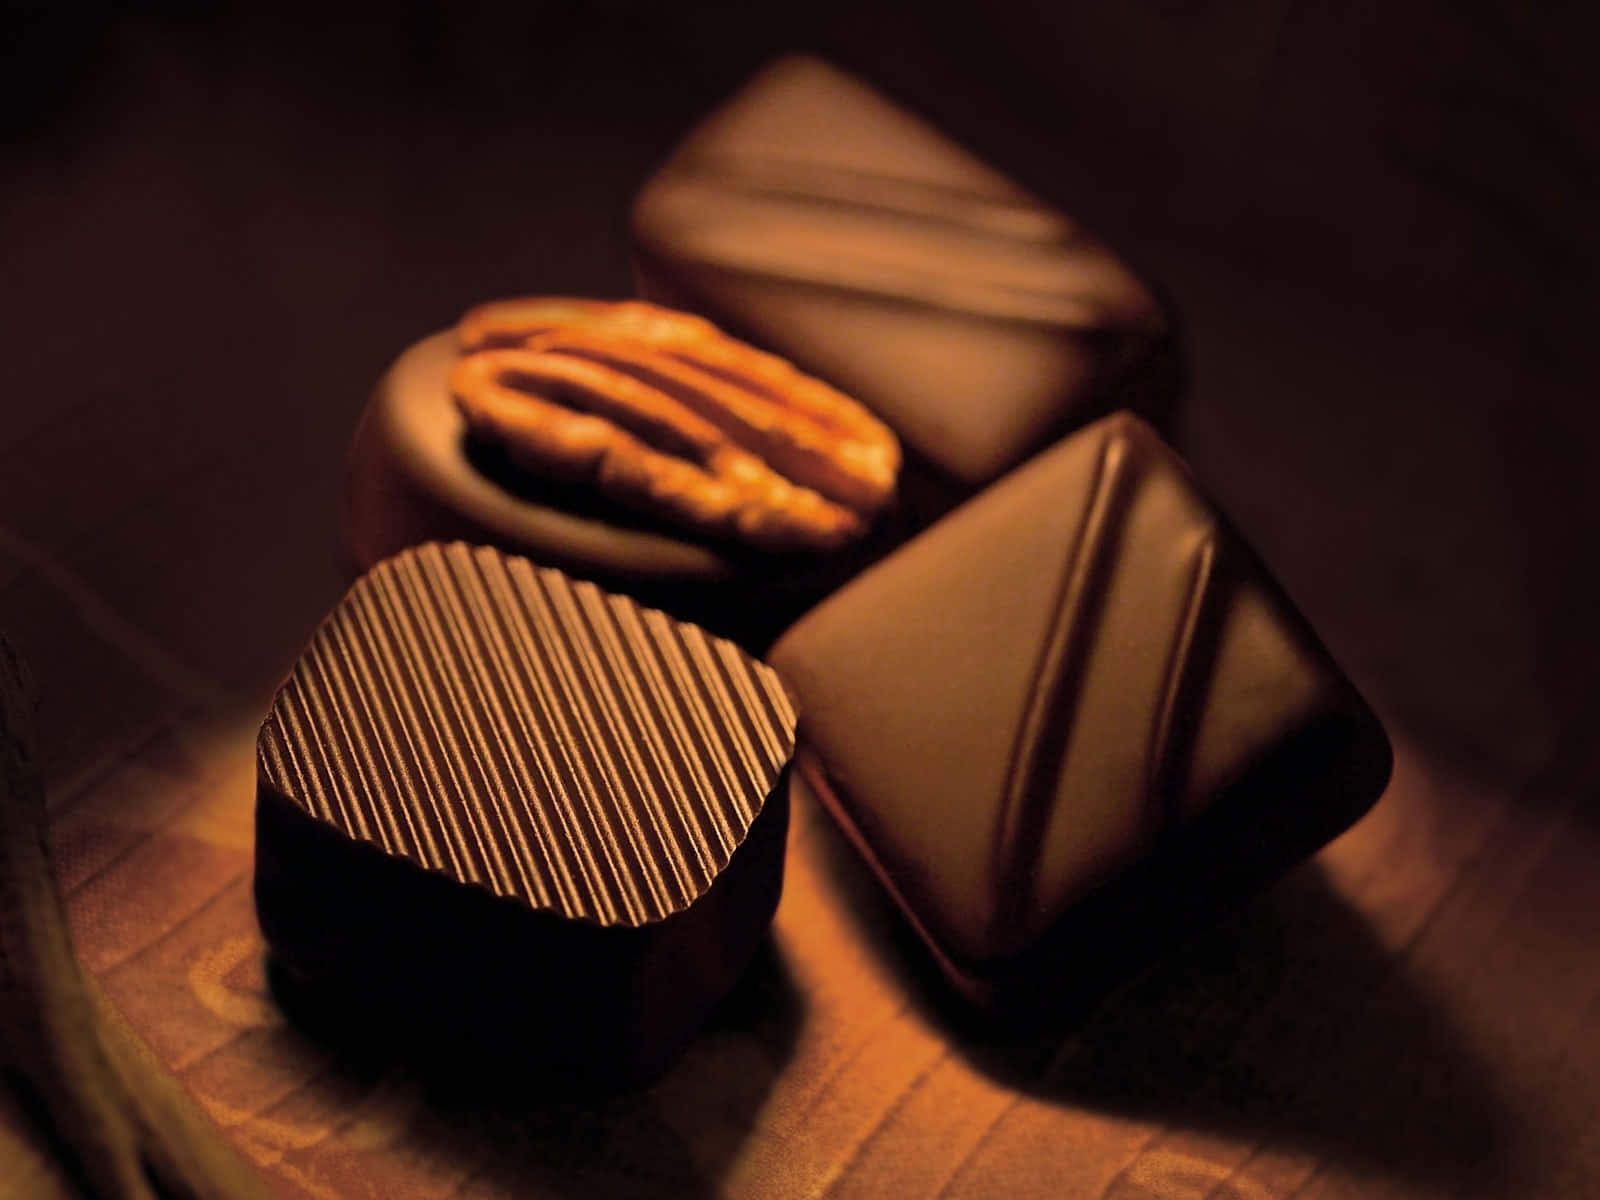 Undolce Al Cioccolato Appena Sfornato, Realizzato Con Ingredienti Di Altissima Qualità.